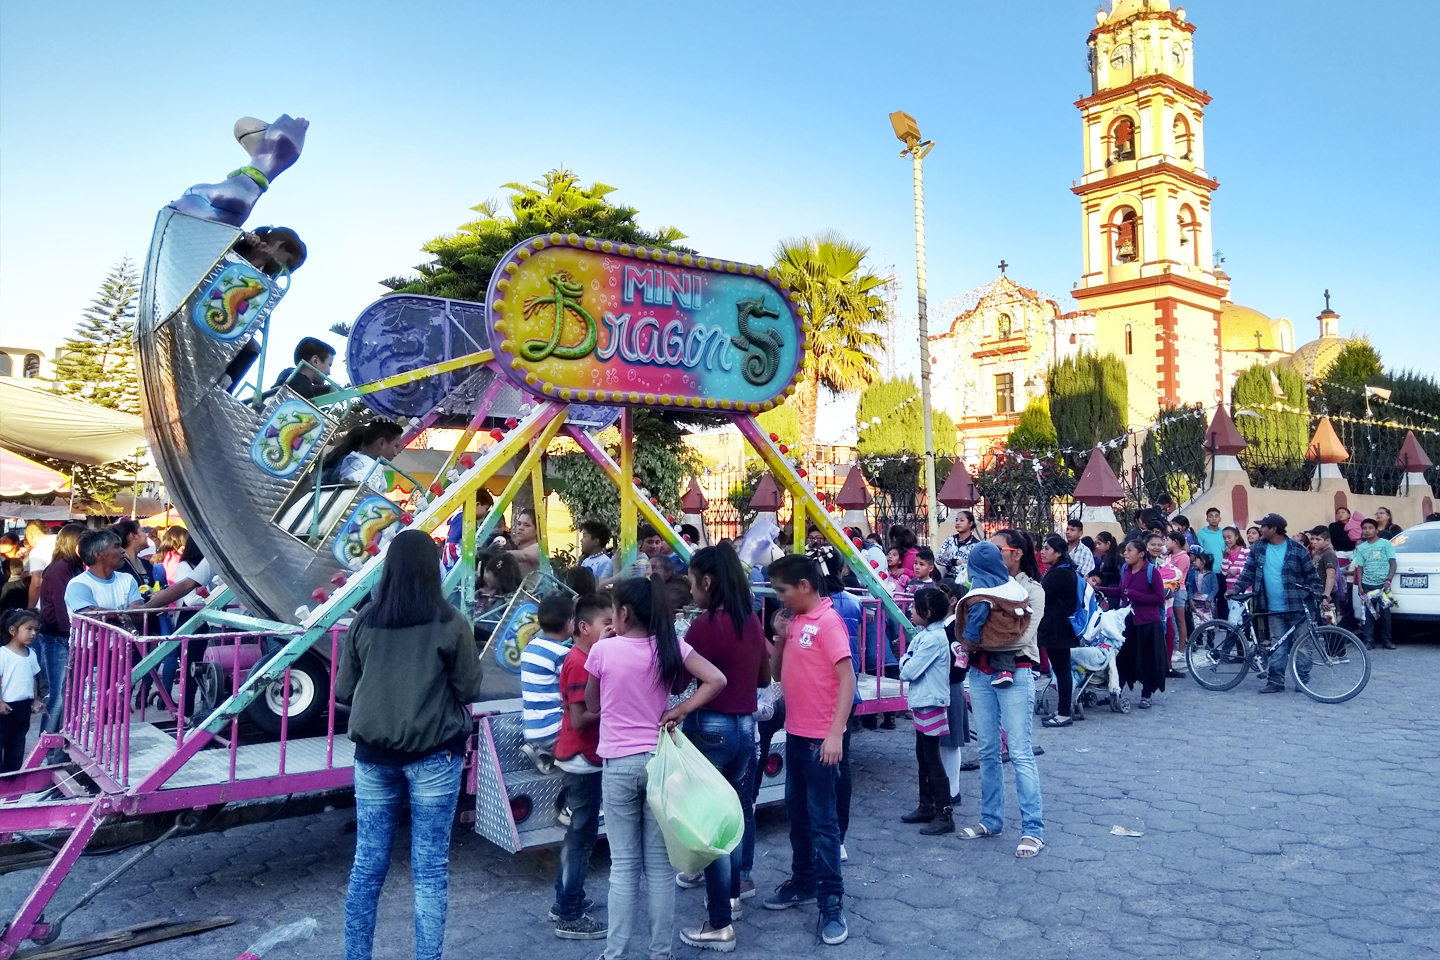 Más de mil niños reciben regalos de Reyes en Xoxtla